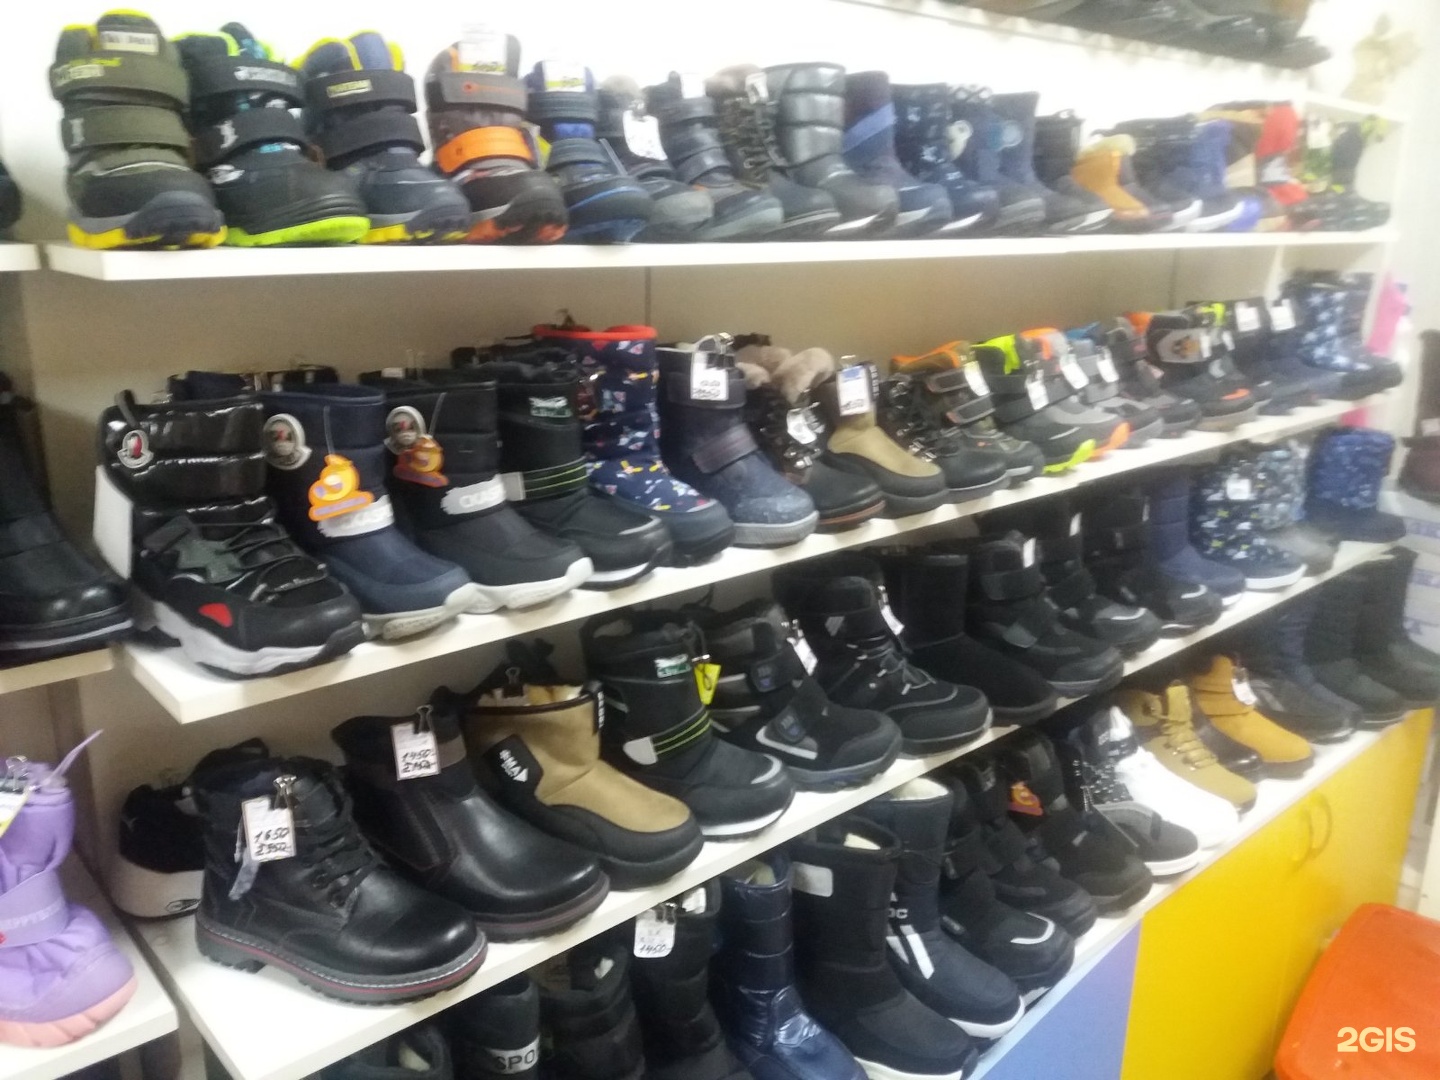 Обувь оренбург сайт. Магазин обуви Оренбург. Сеть магазинов обуви в Оренбурге. Обувь Оренбург магазины недорого мужские.